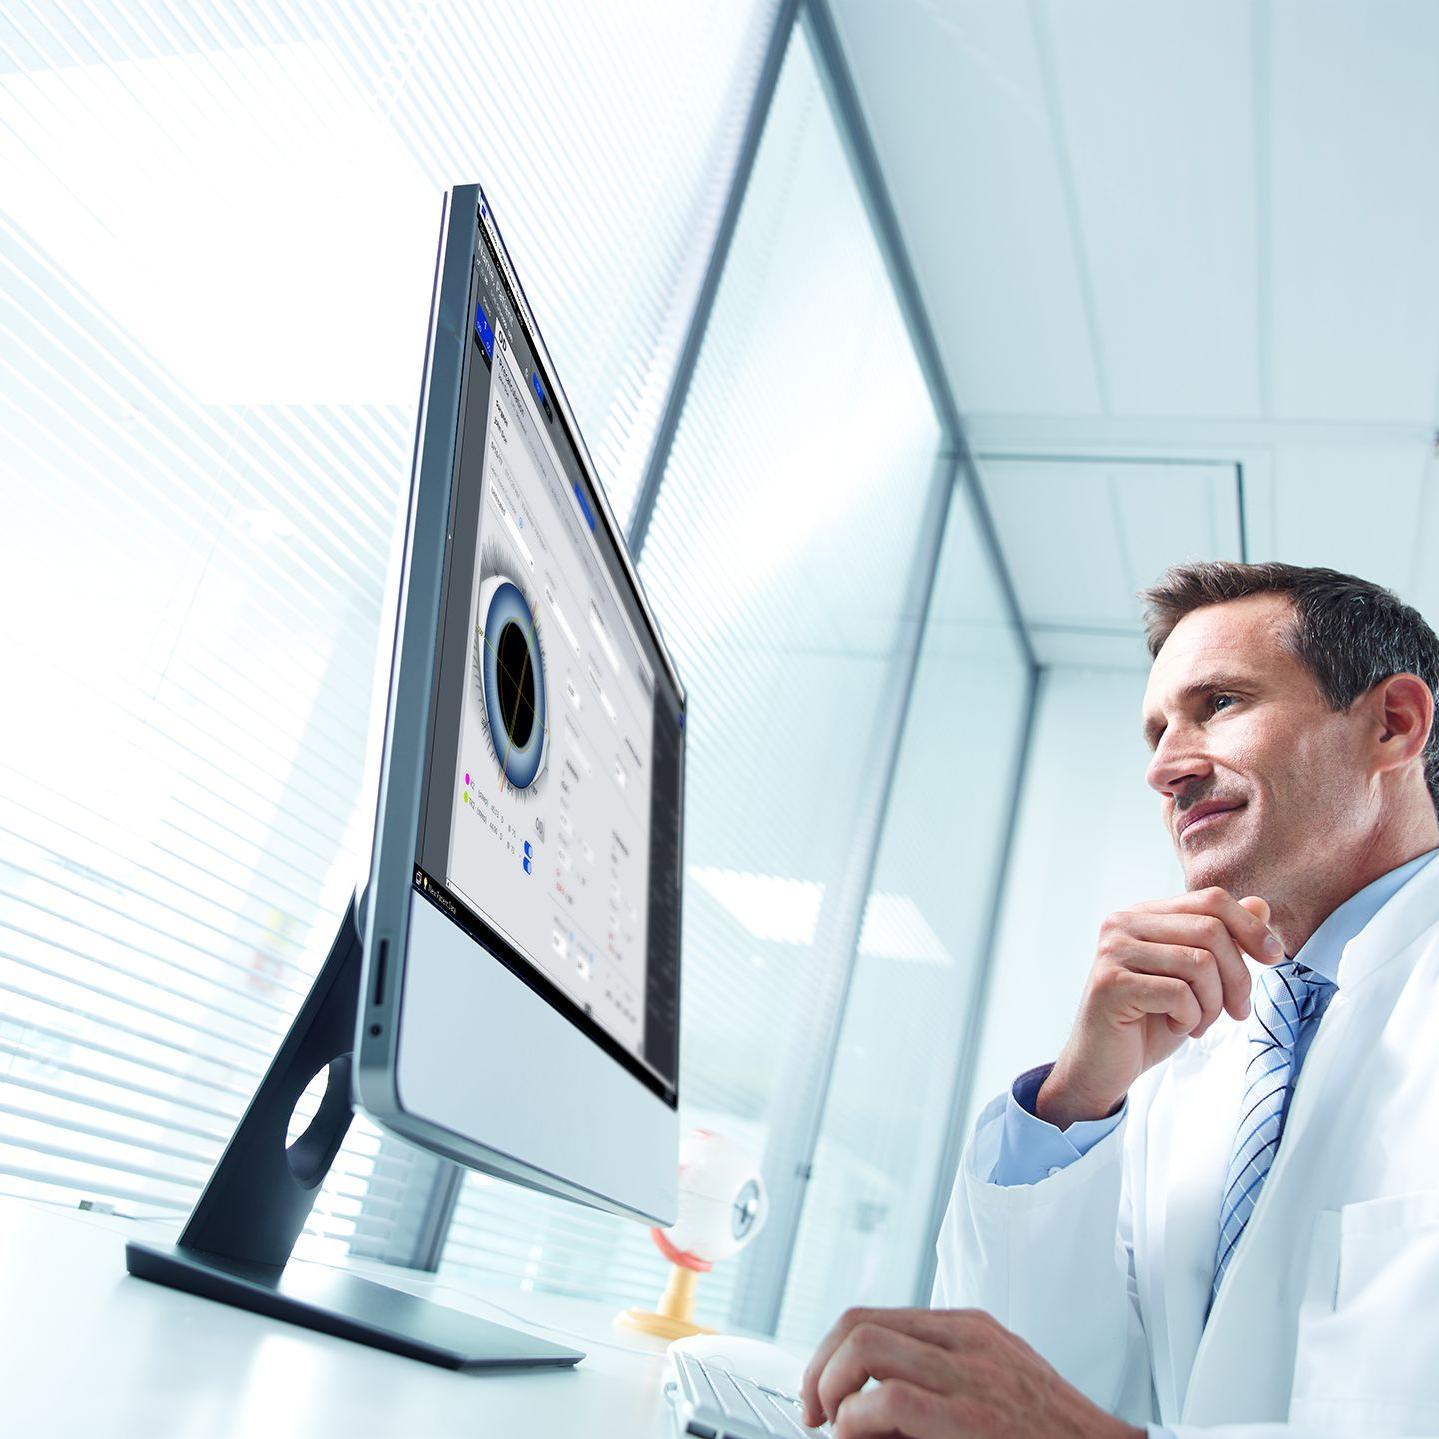 Ein Mann im Laborkittel schaut auf einen Bildschirm, auf dem eine Software zur Augenmessung angezeigt wird. 